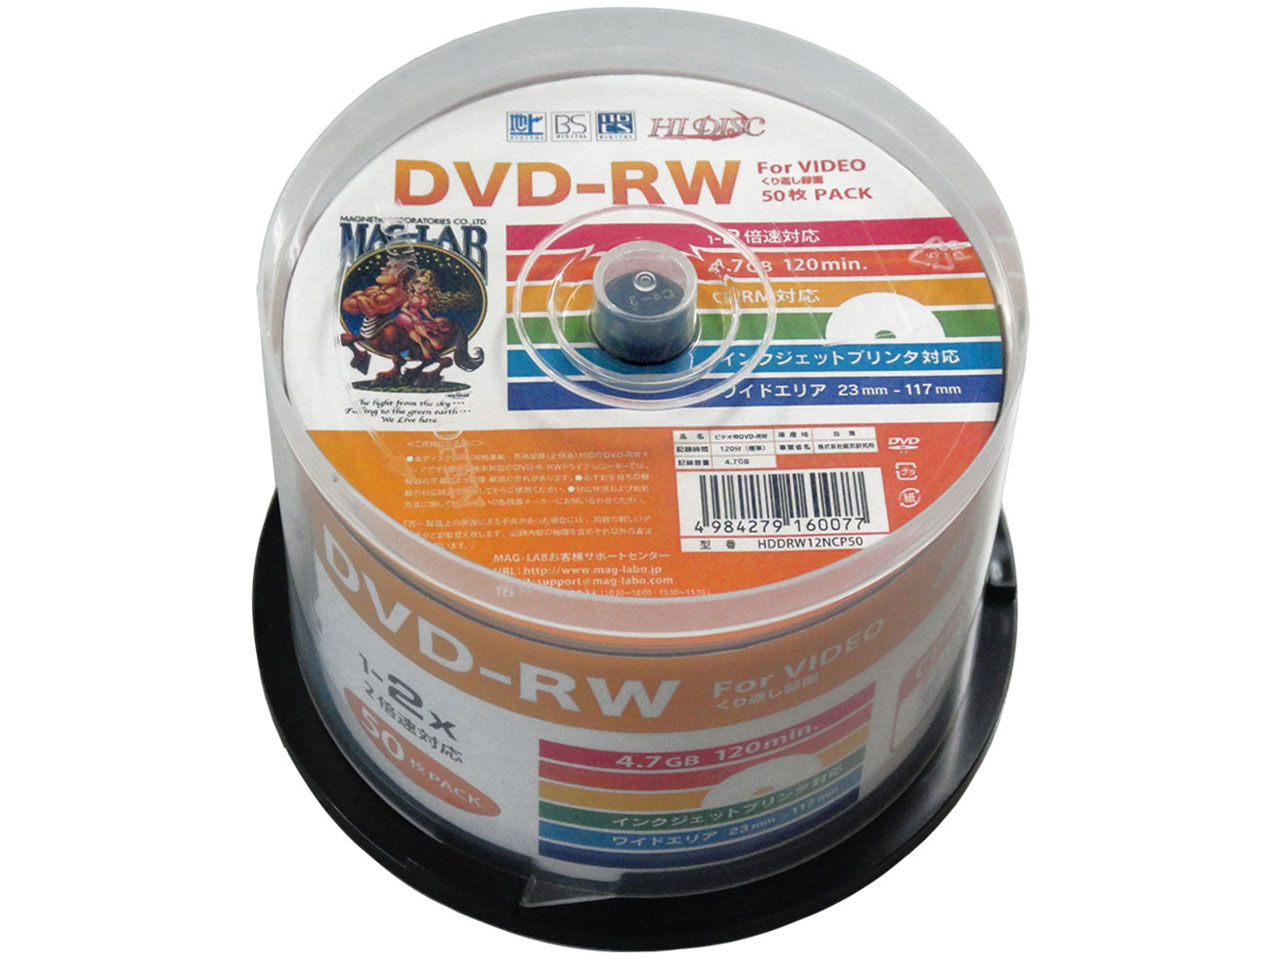 価格 Com Hddrw12ncp50 Dvd Rw 2倍速 50枚組 の製品画像